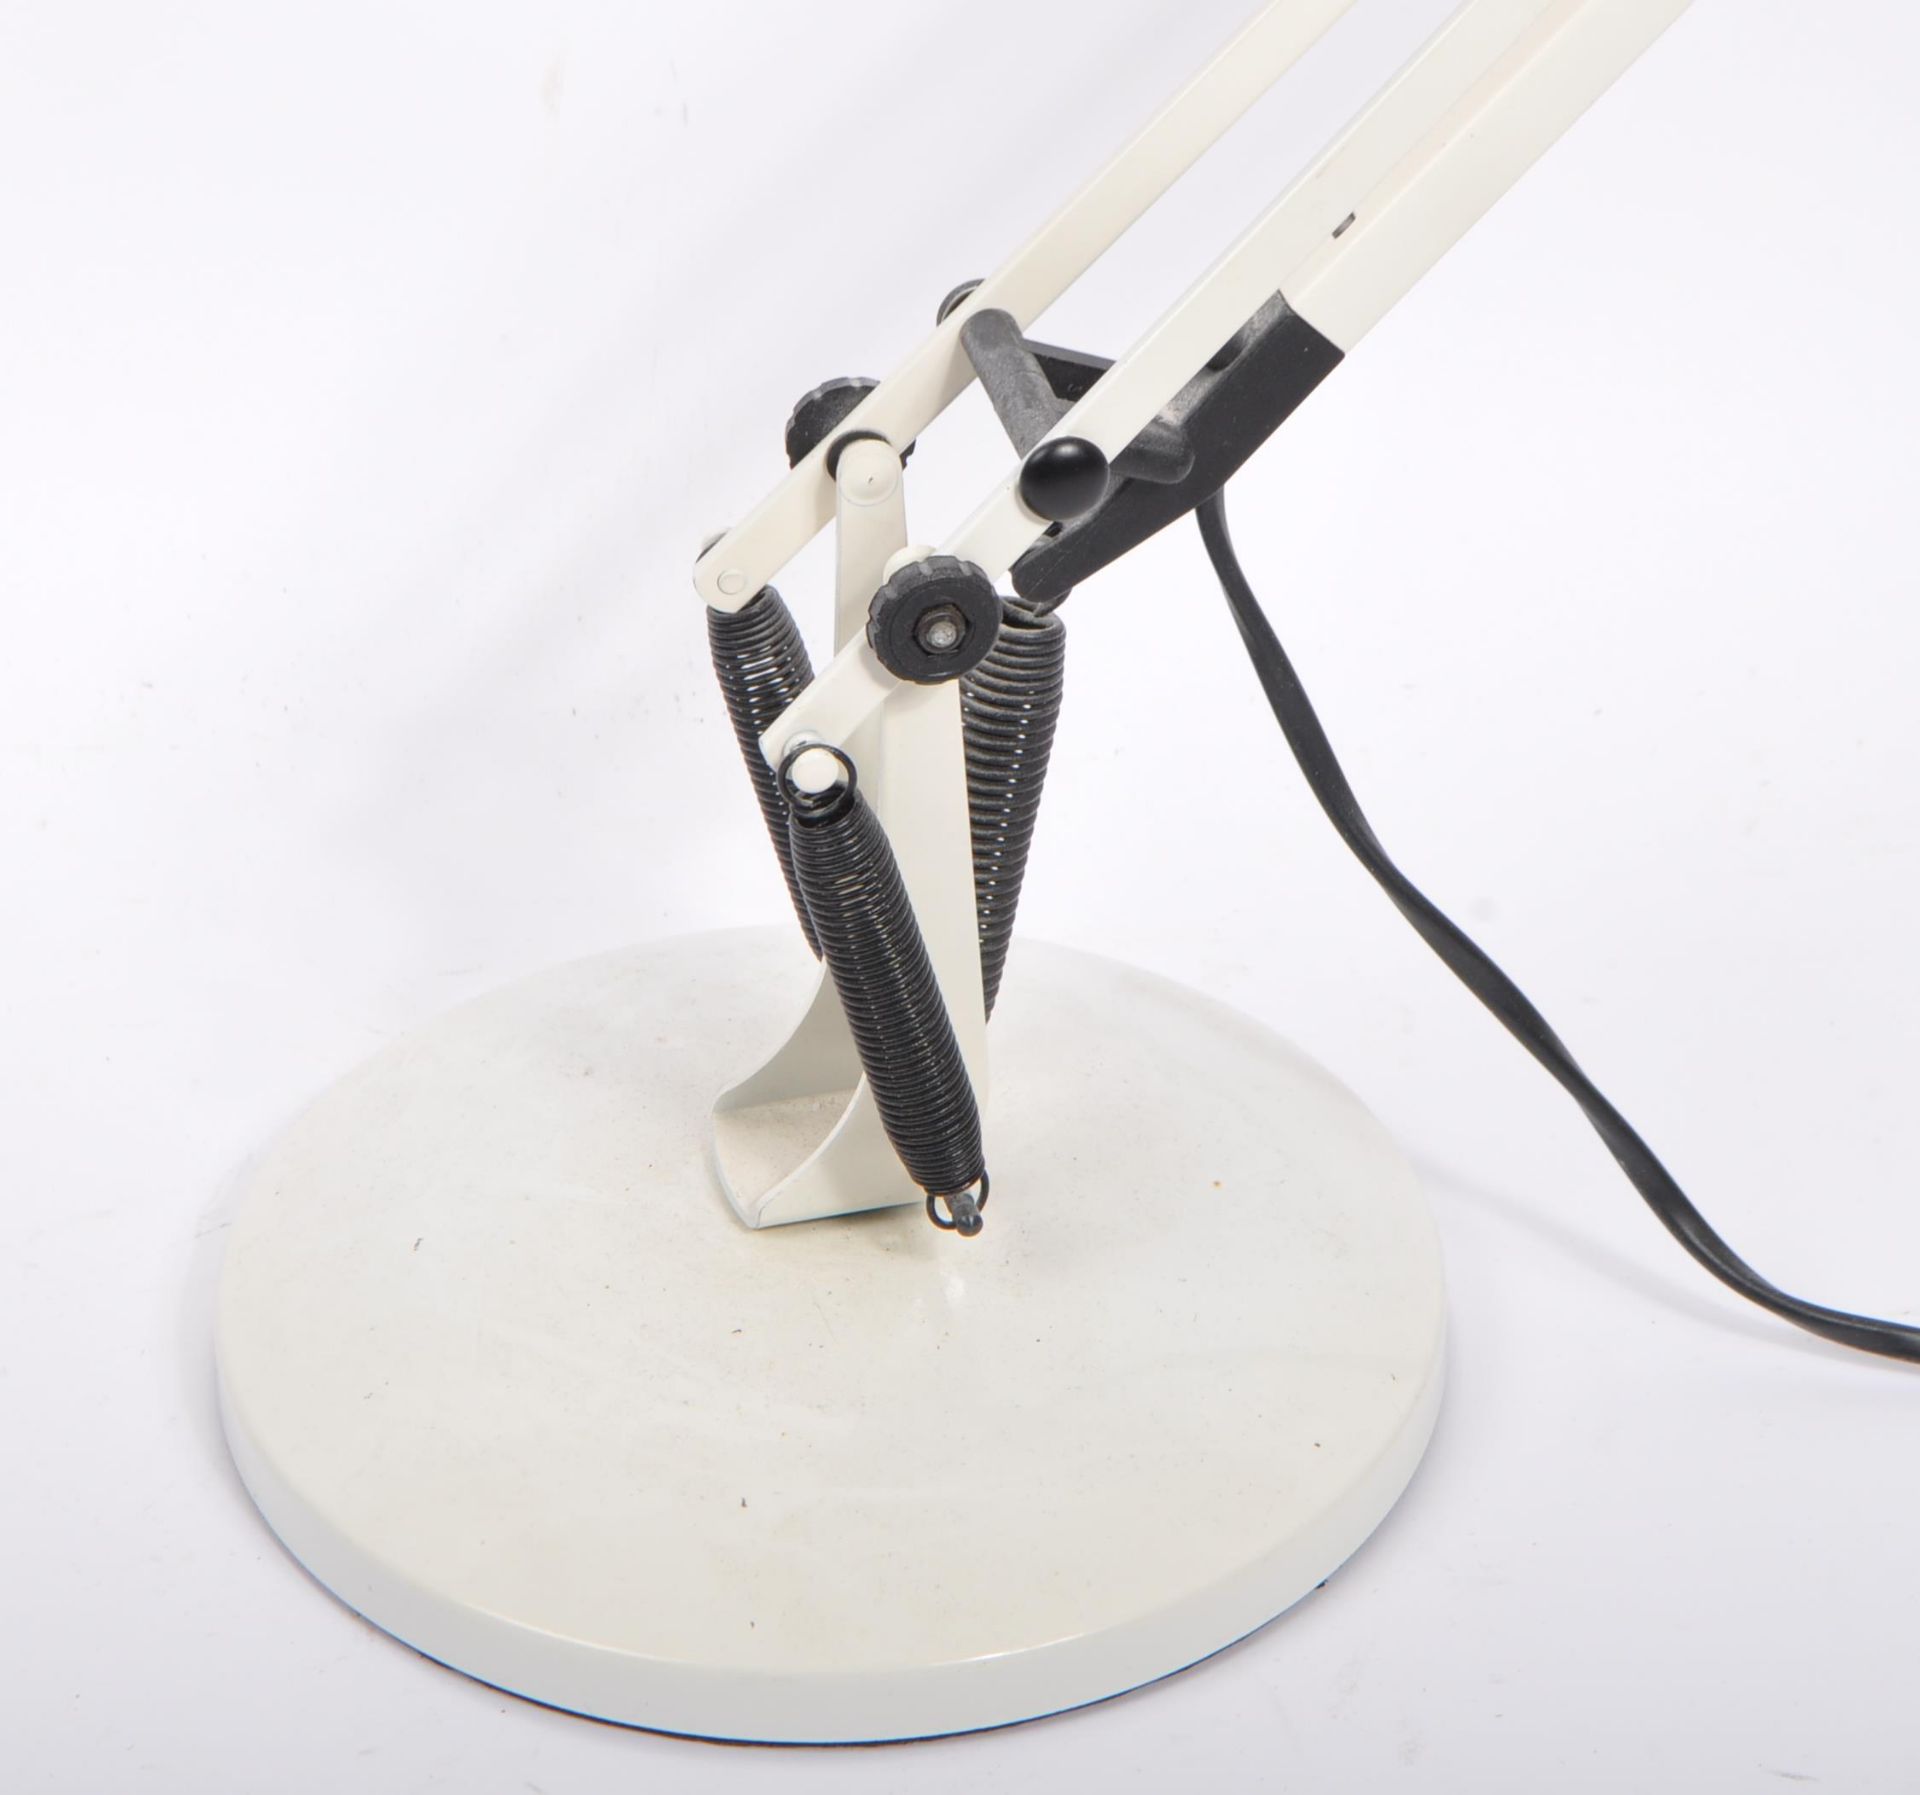 MID 20TH CENTURY RETRO INDUSTRIAL DESK LAMP - Image 2 of 3